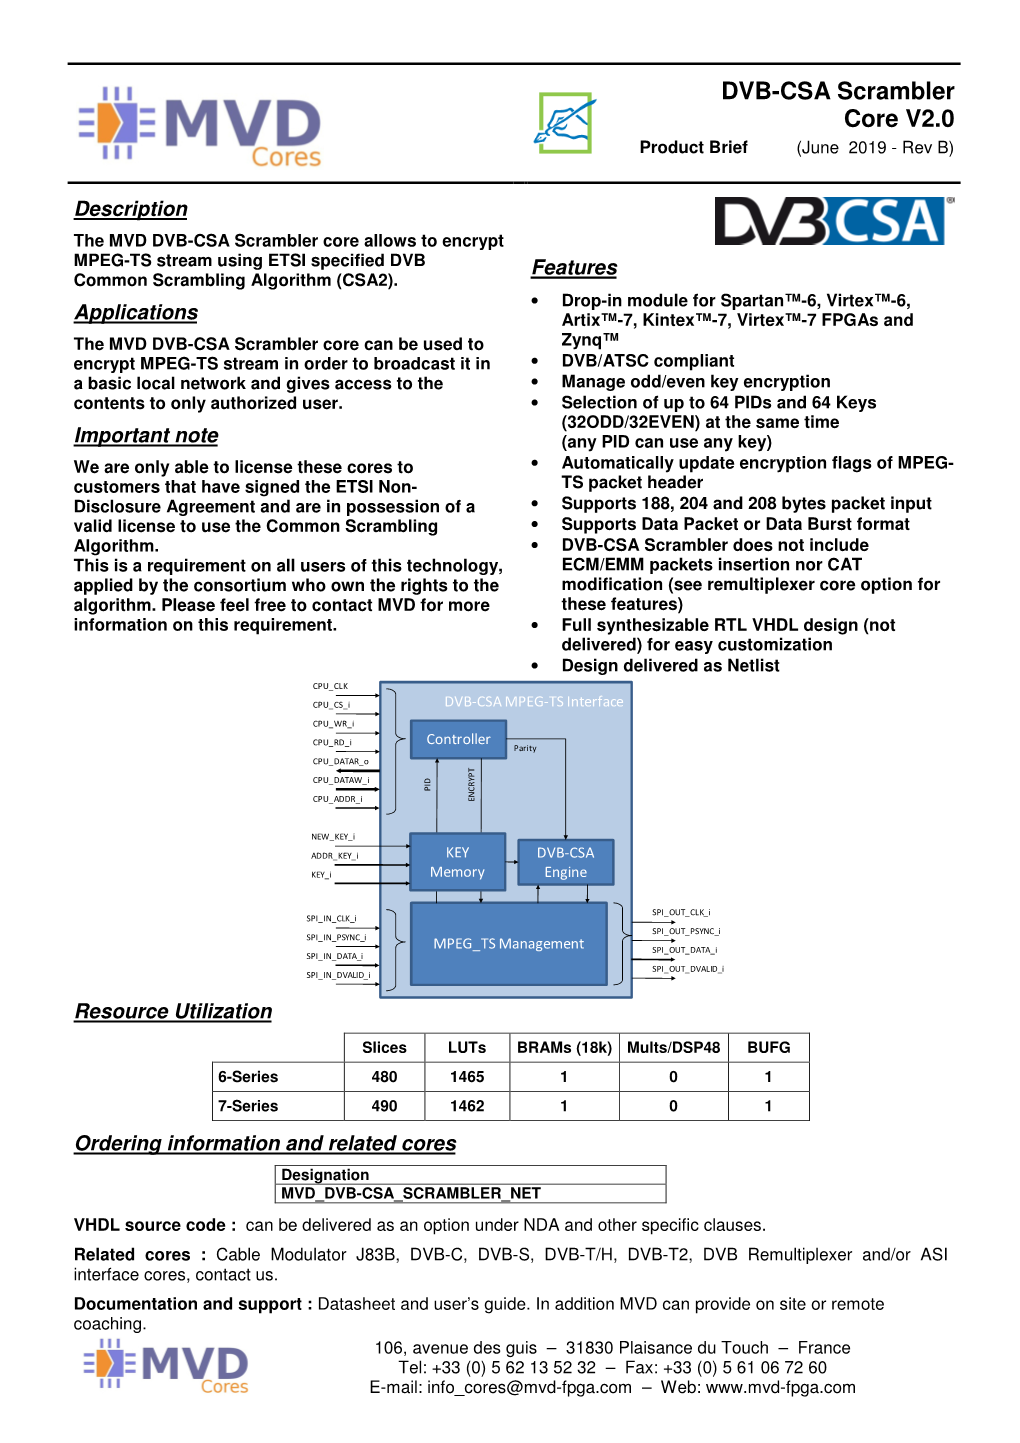 DVB-CSA Scrambler Core V2.0 Product Brief (June 2019 - Rev B)